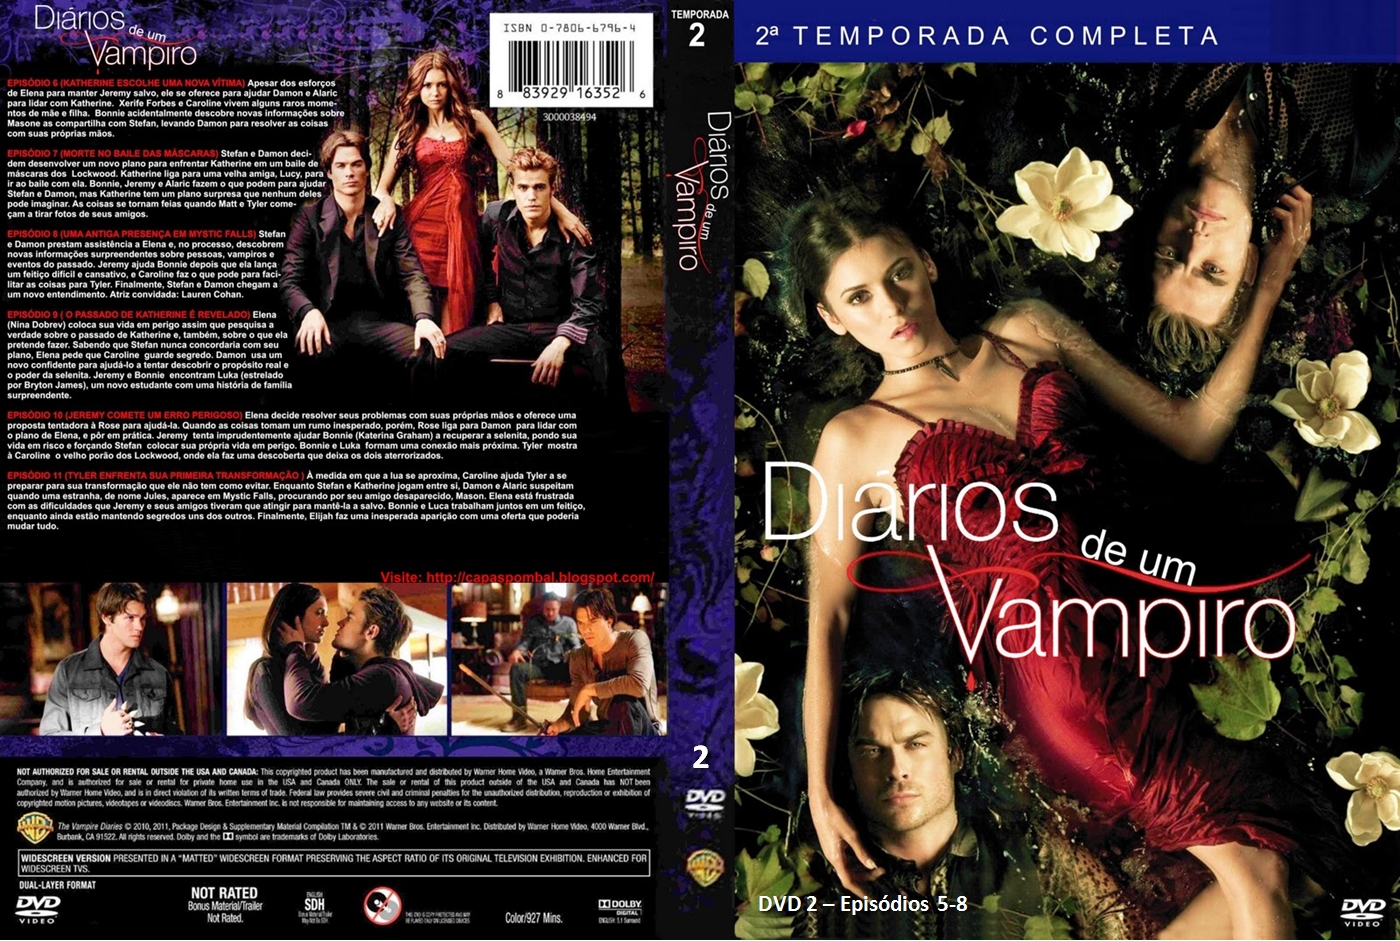 Diario de um vampiro 2 temporada